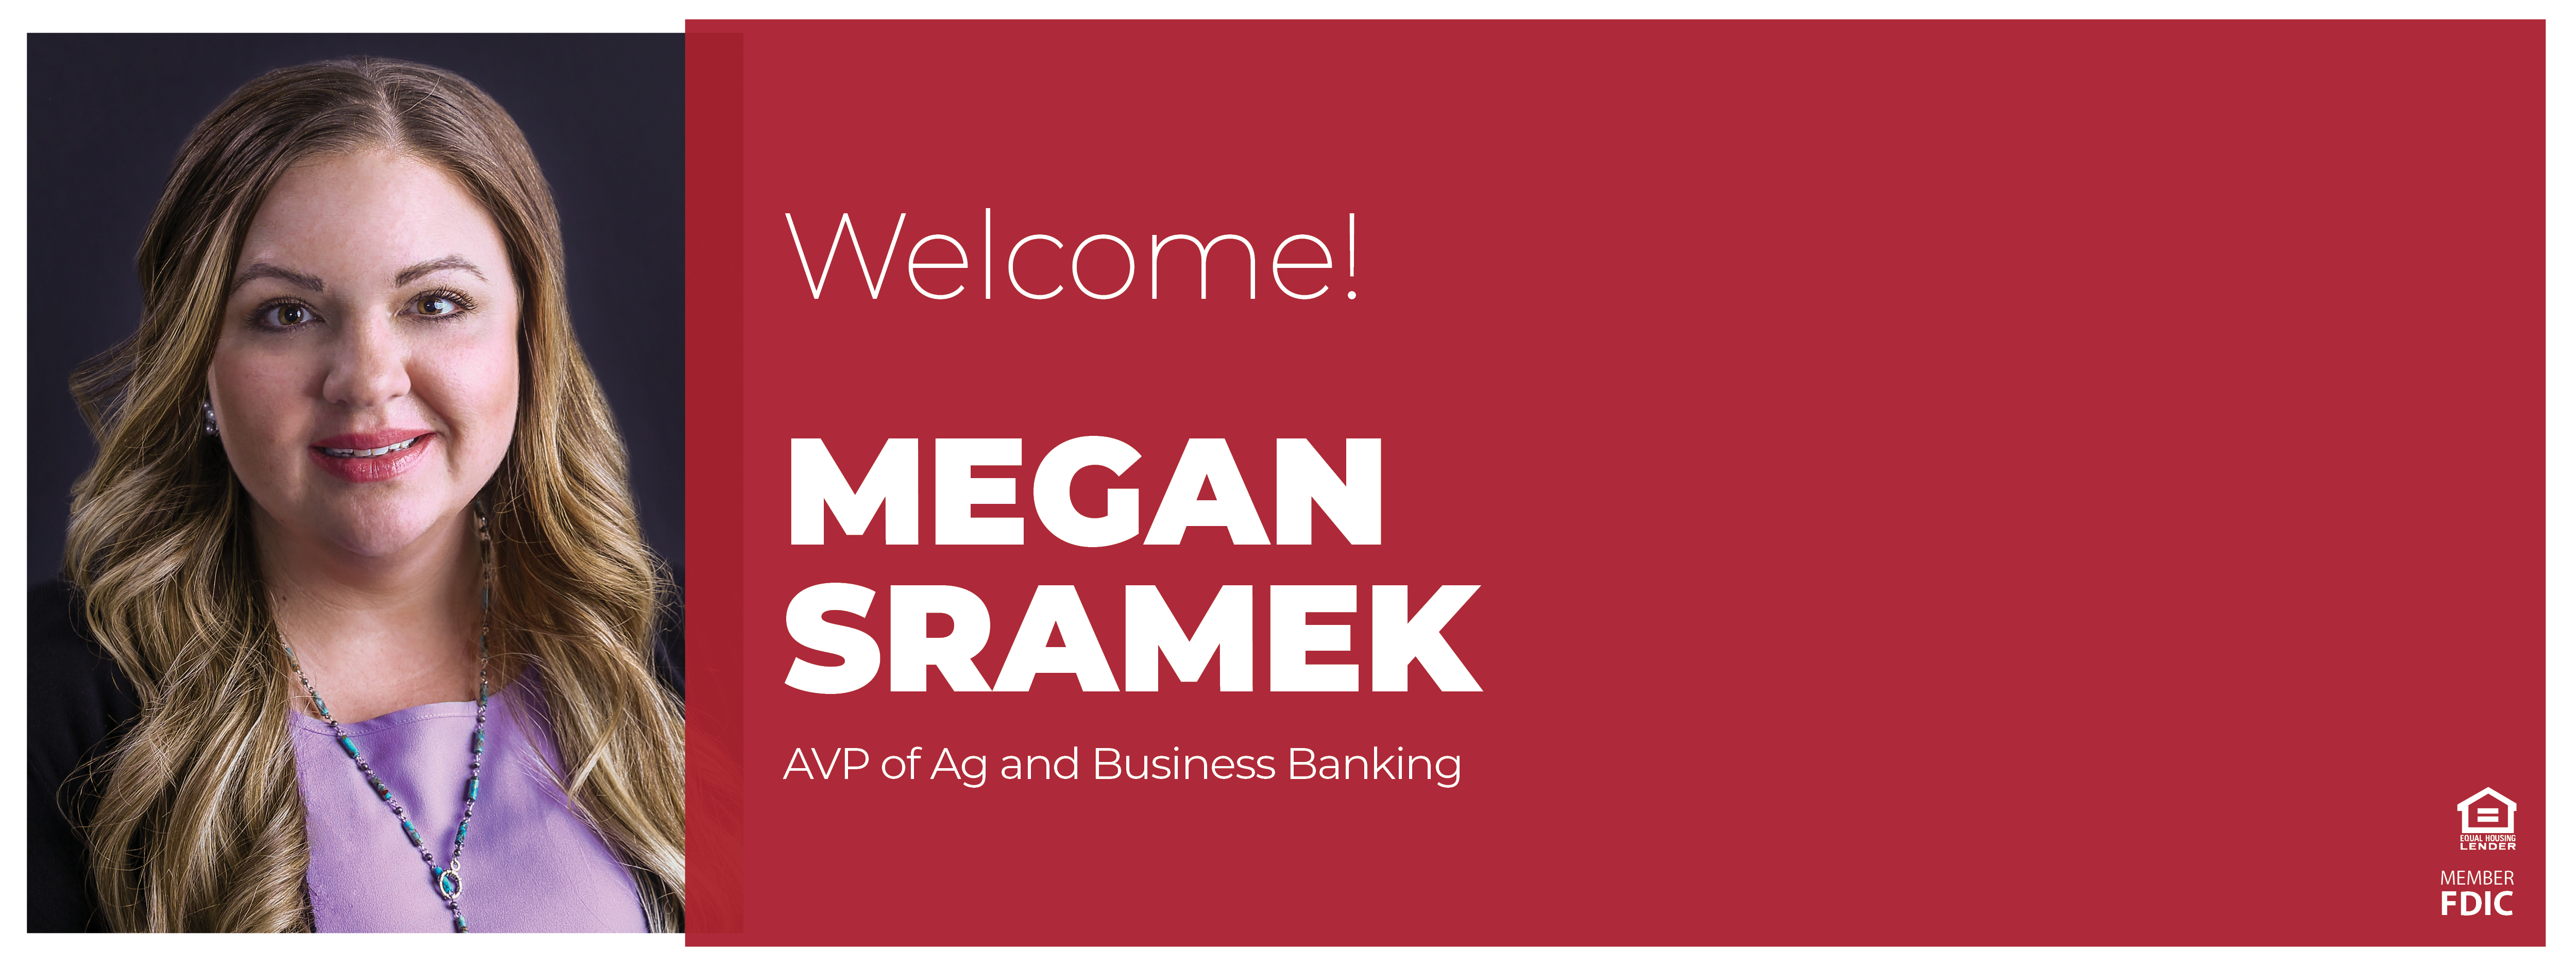 Welcome Megan Sramek 